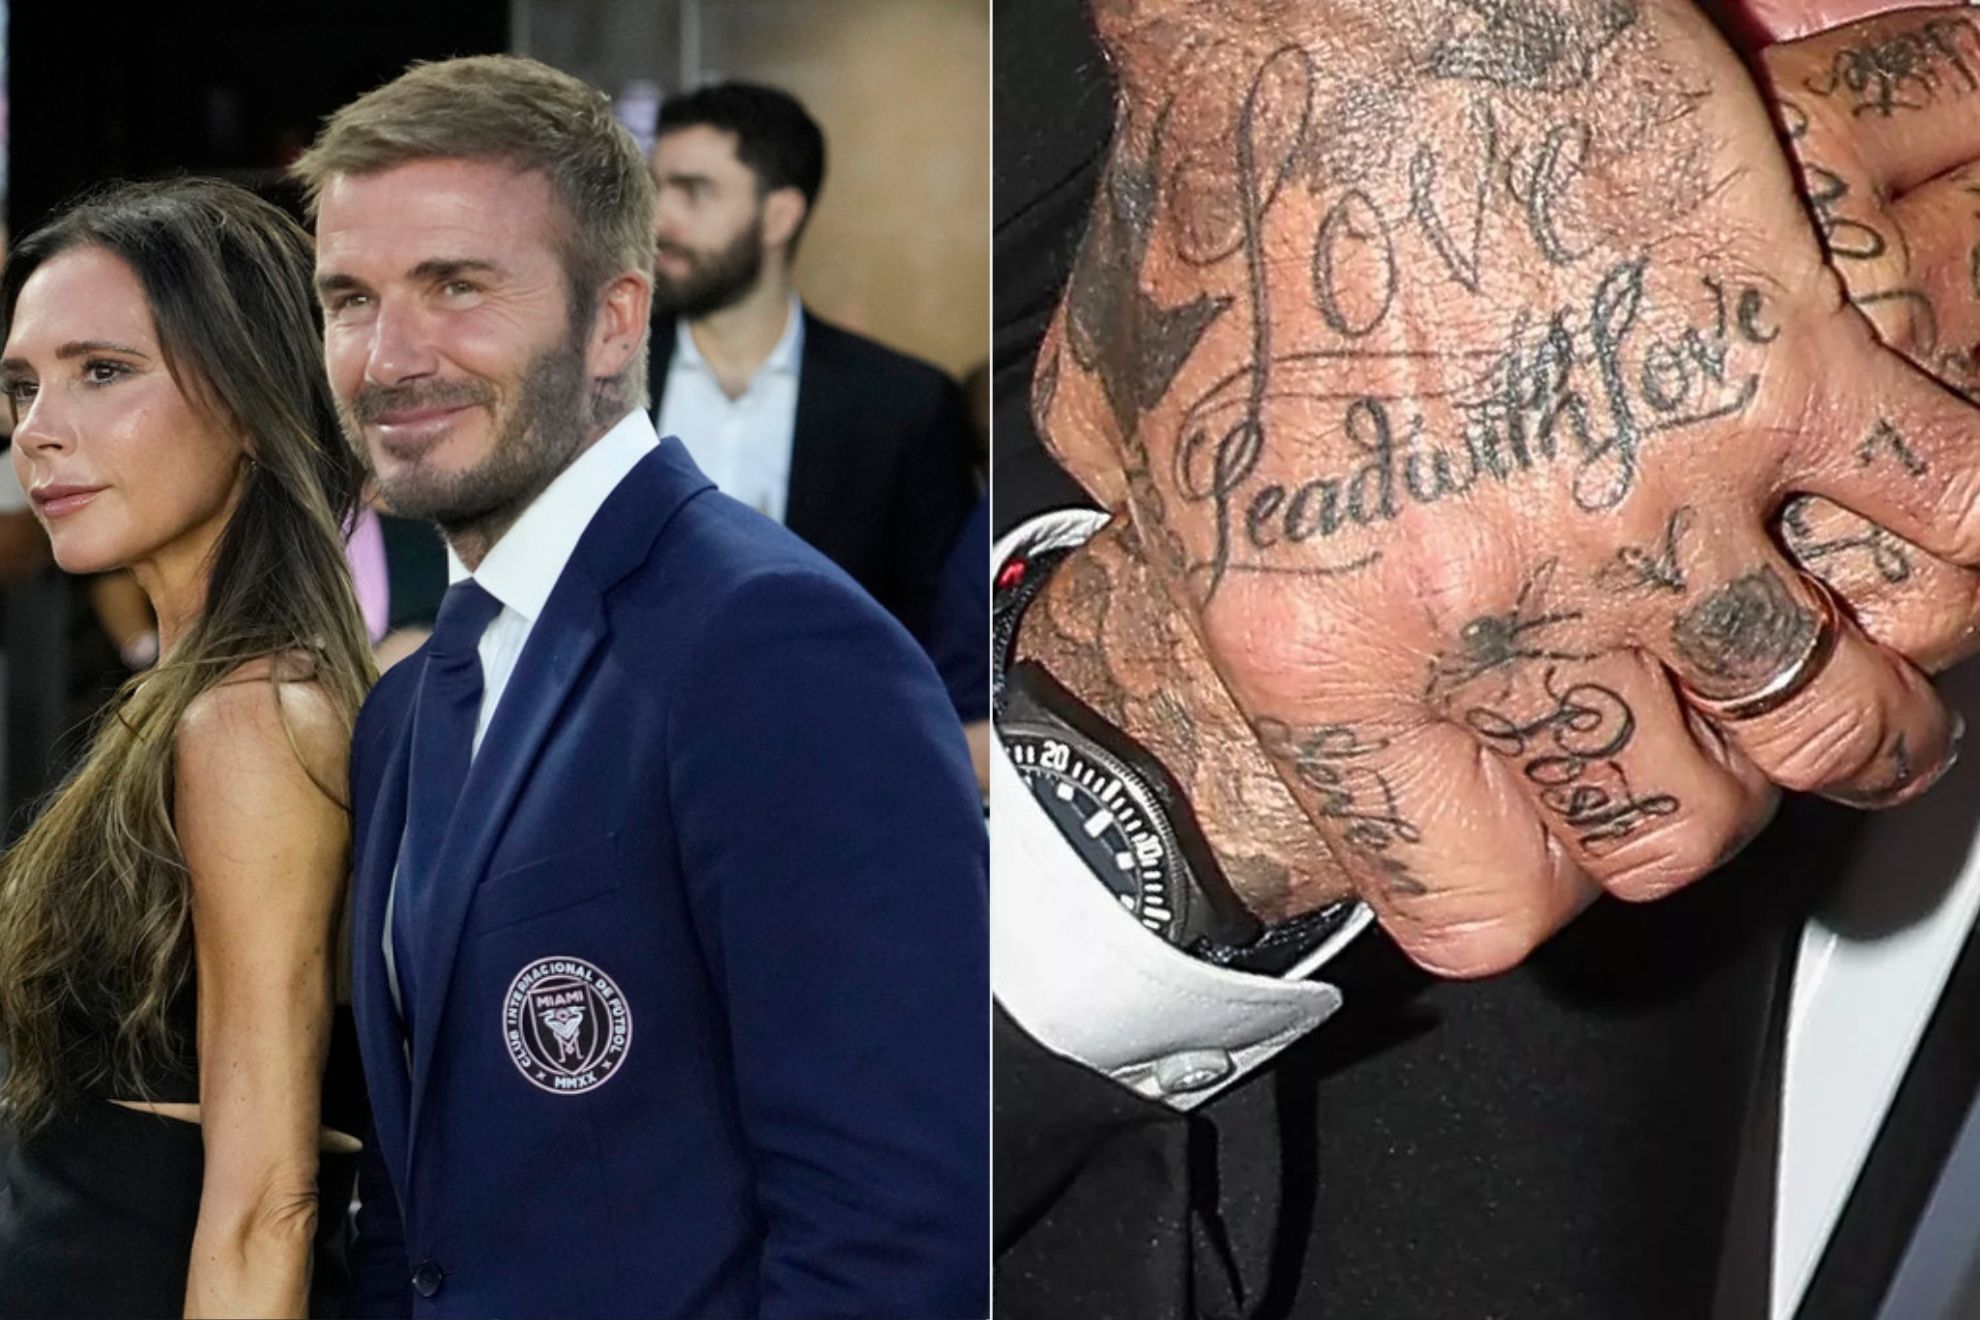 David Beckham's tribute tattoos for Victoria Beckham